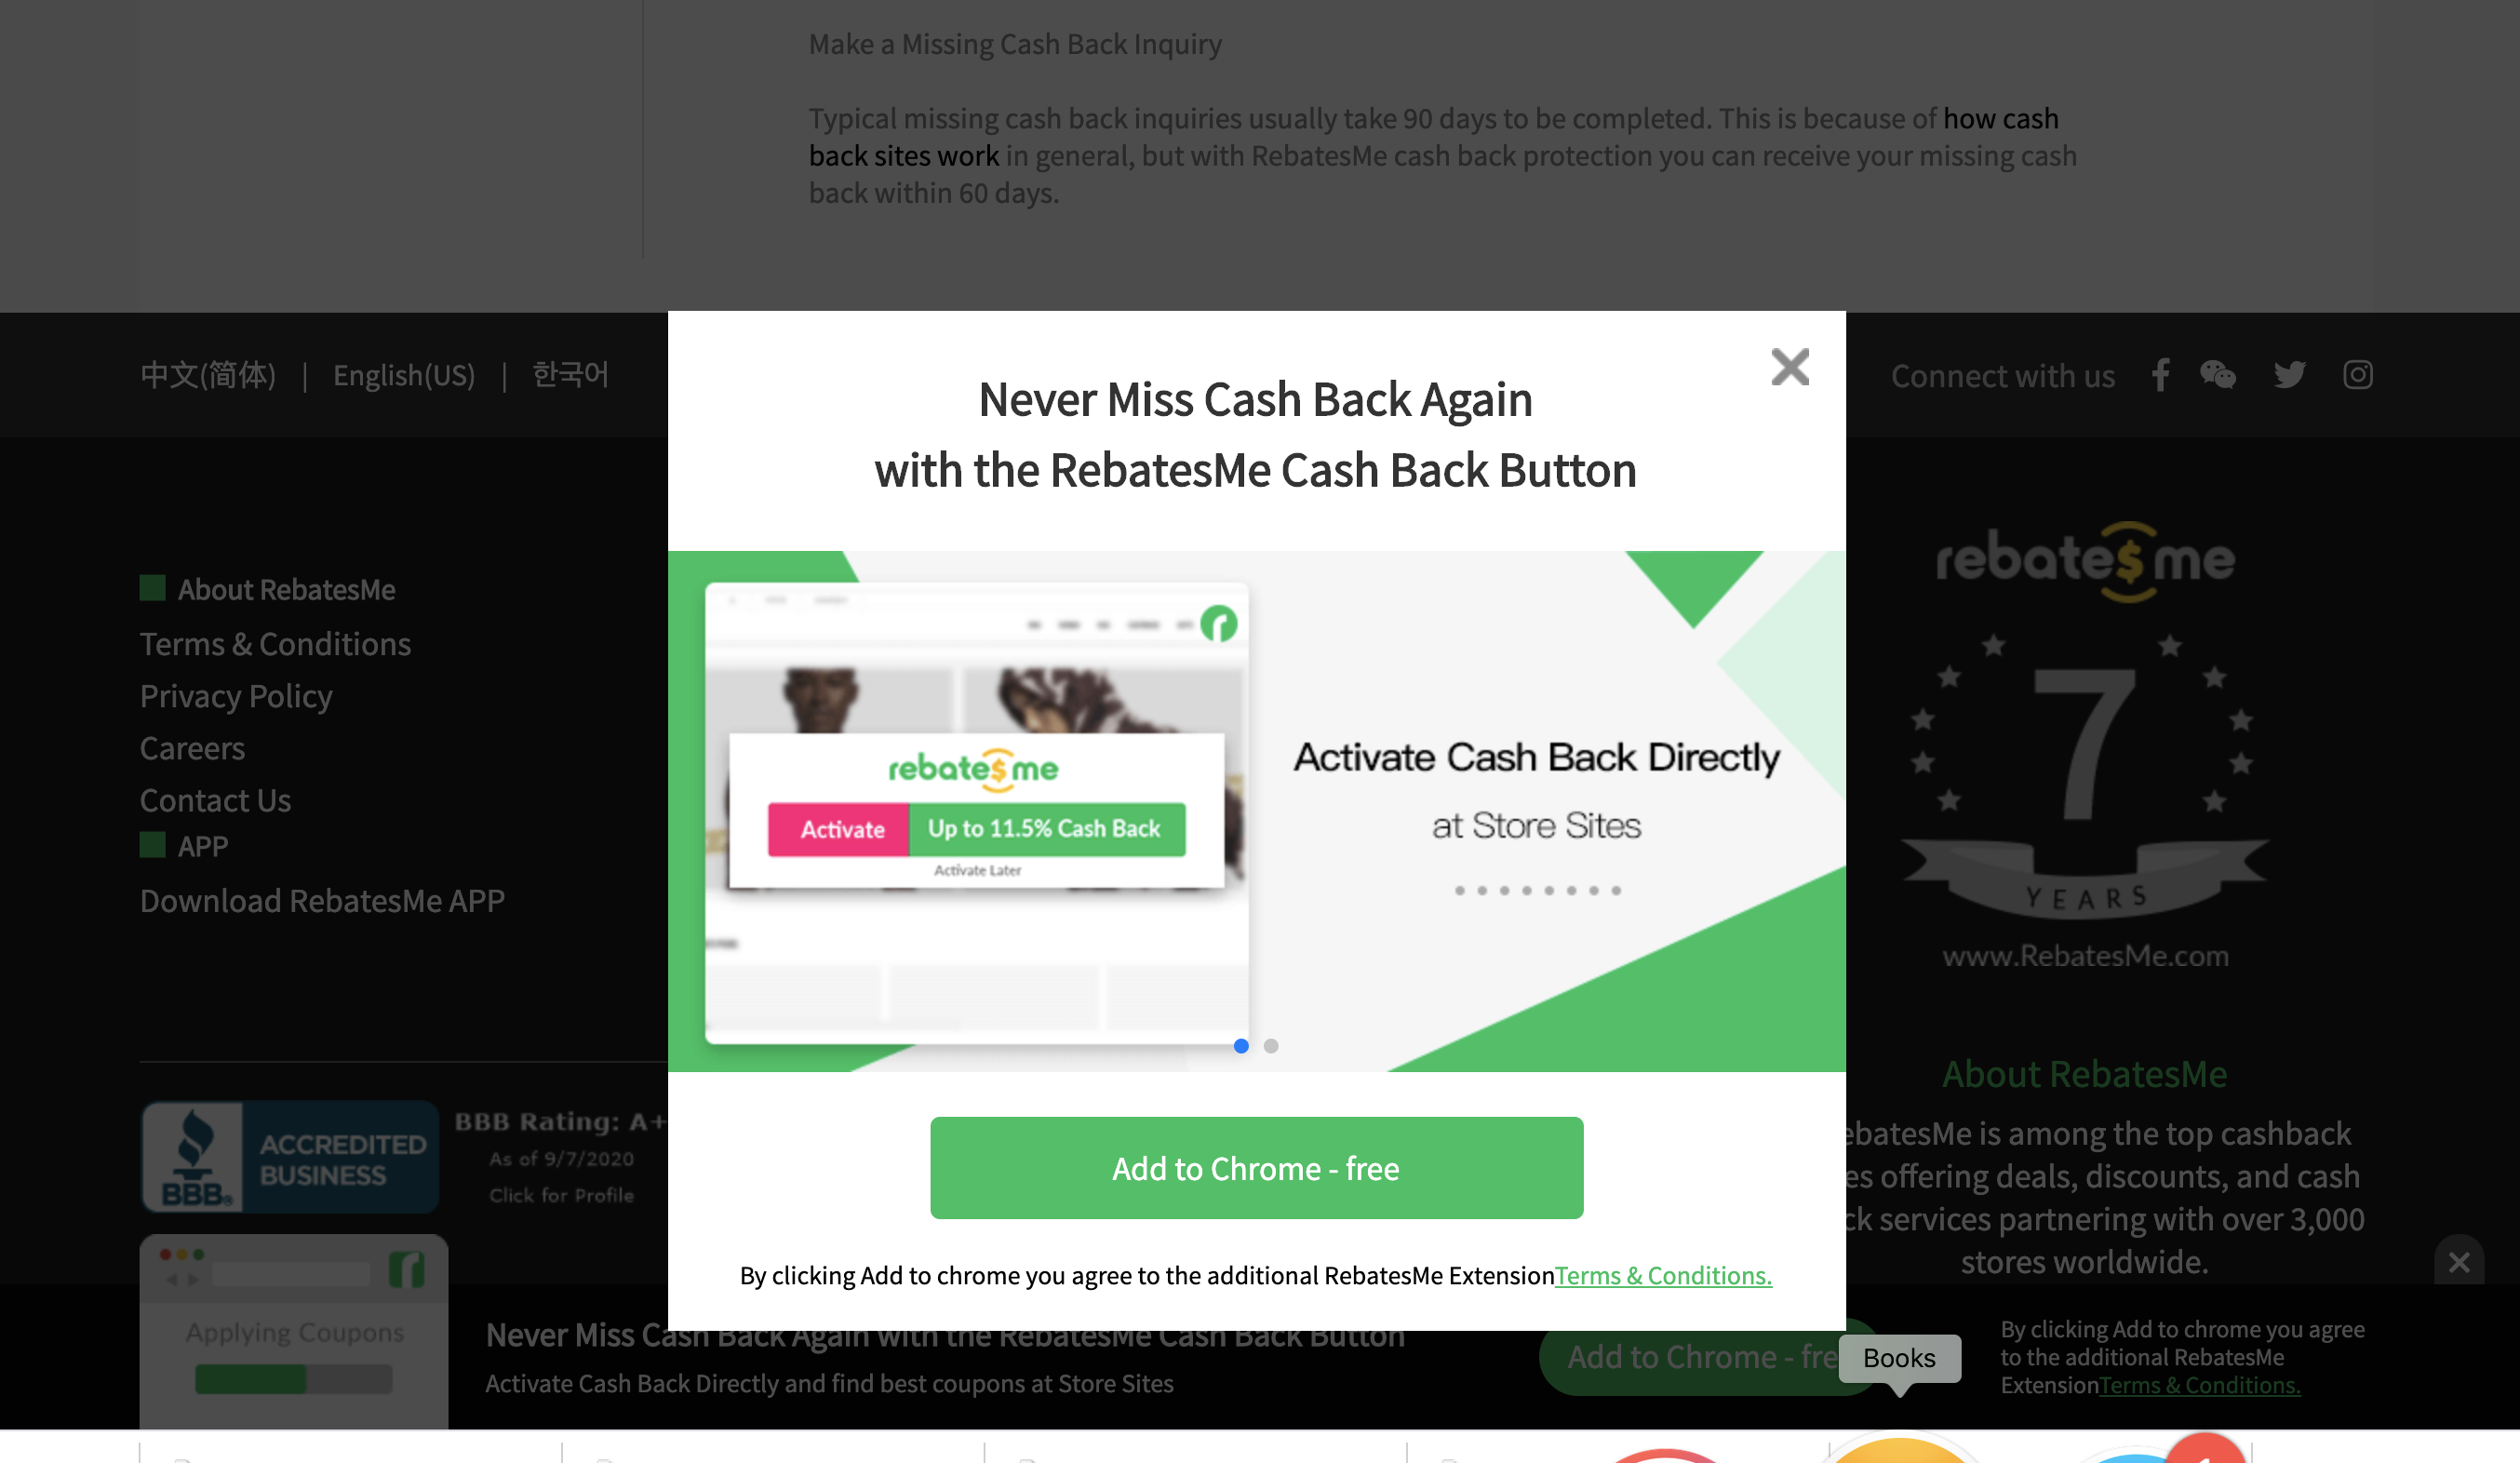 RebatesMe Cash Back Button